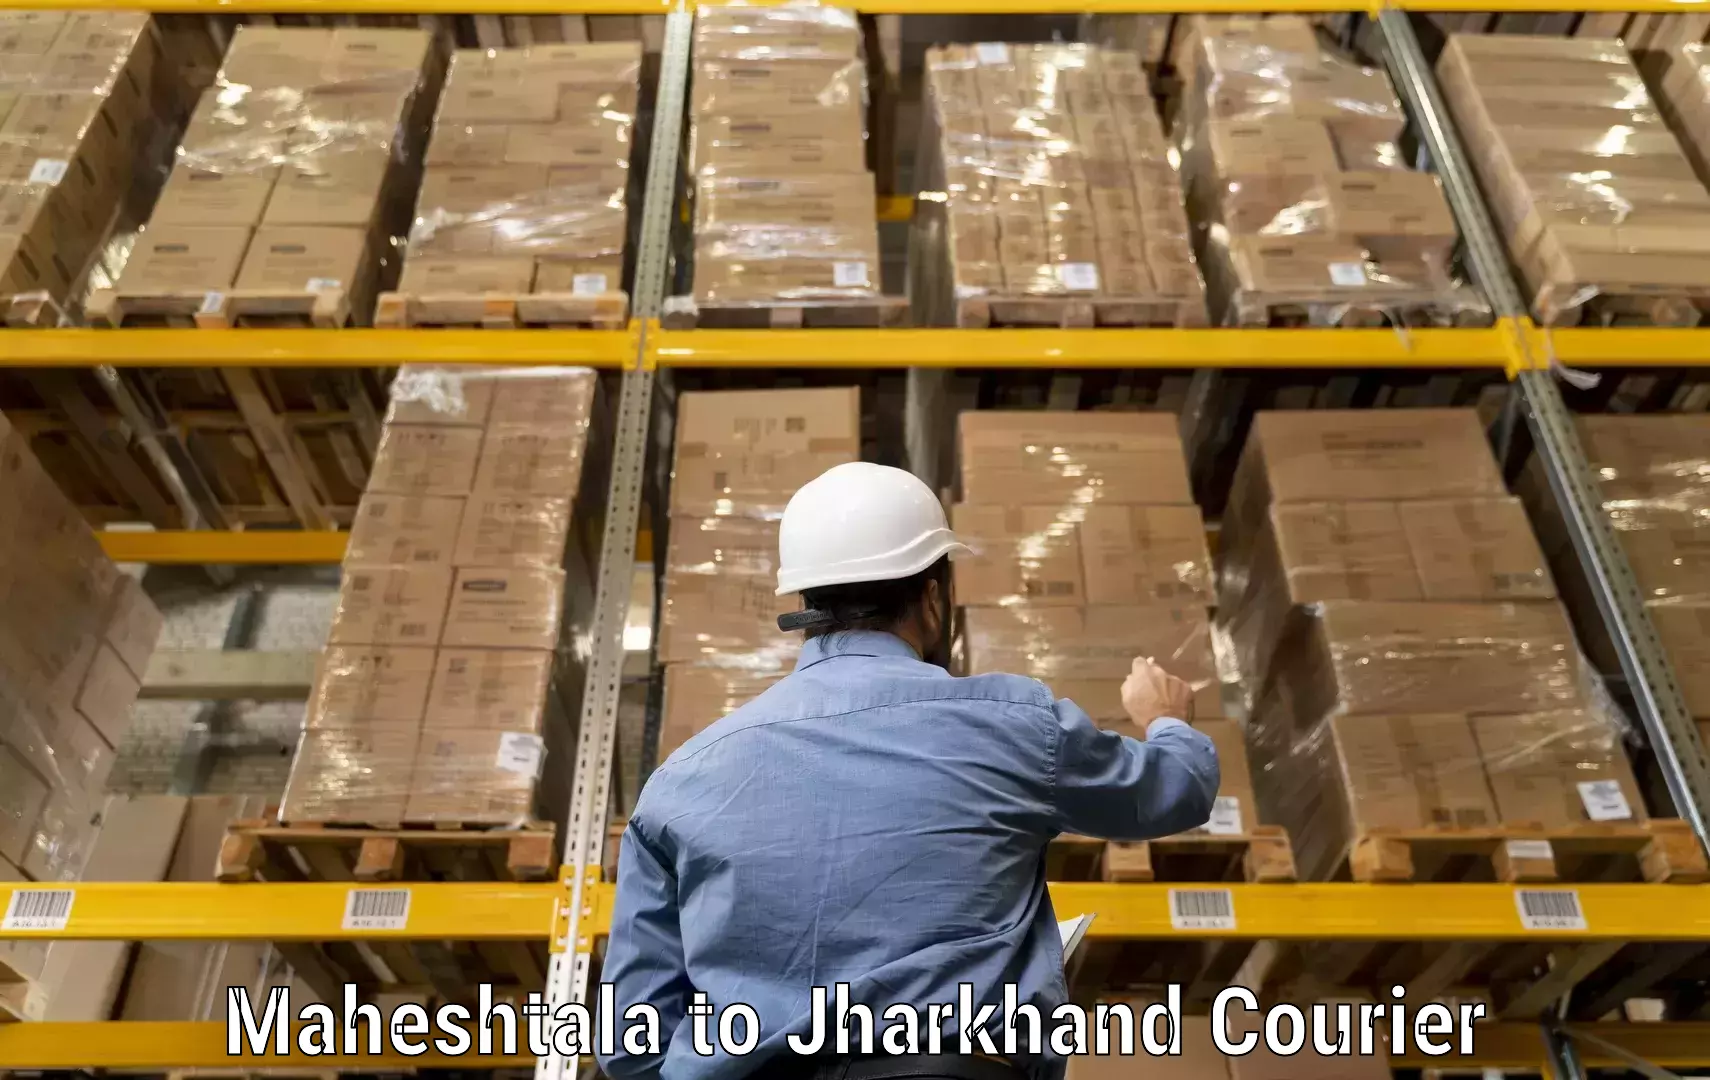 Cargo courier service Maheshtala to Godabar Chatra